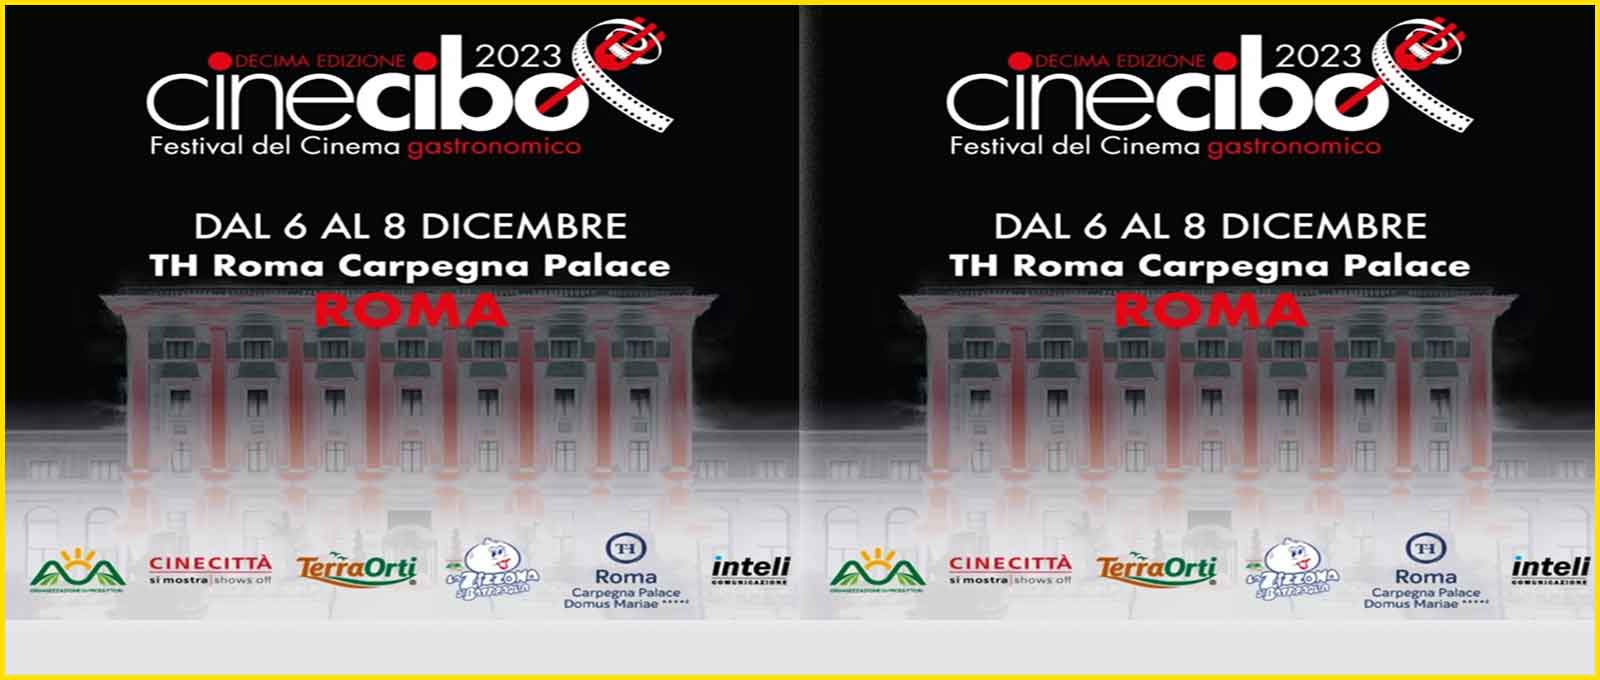 Cinecibo, il Festival del Cinema Gastronomico